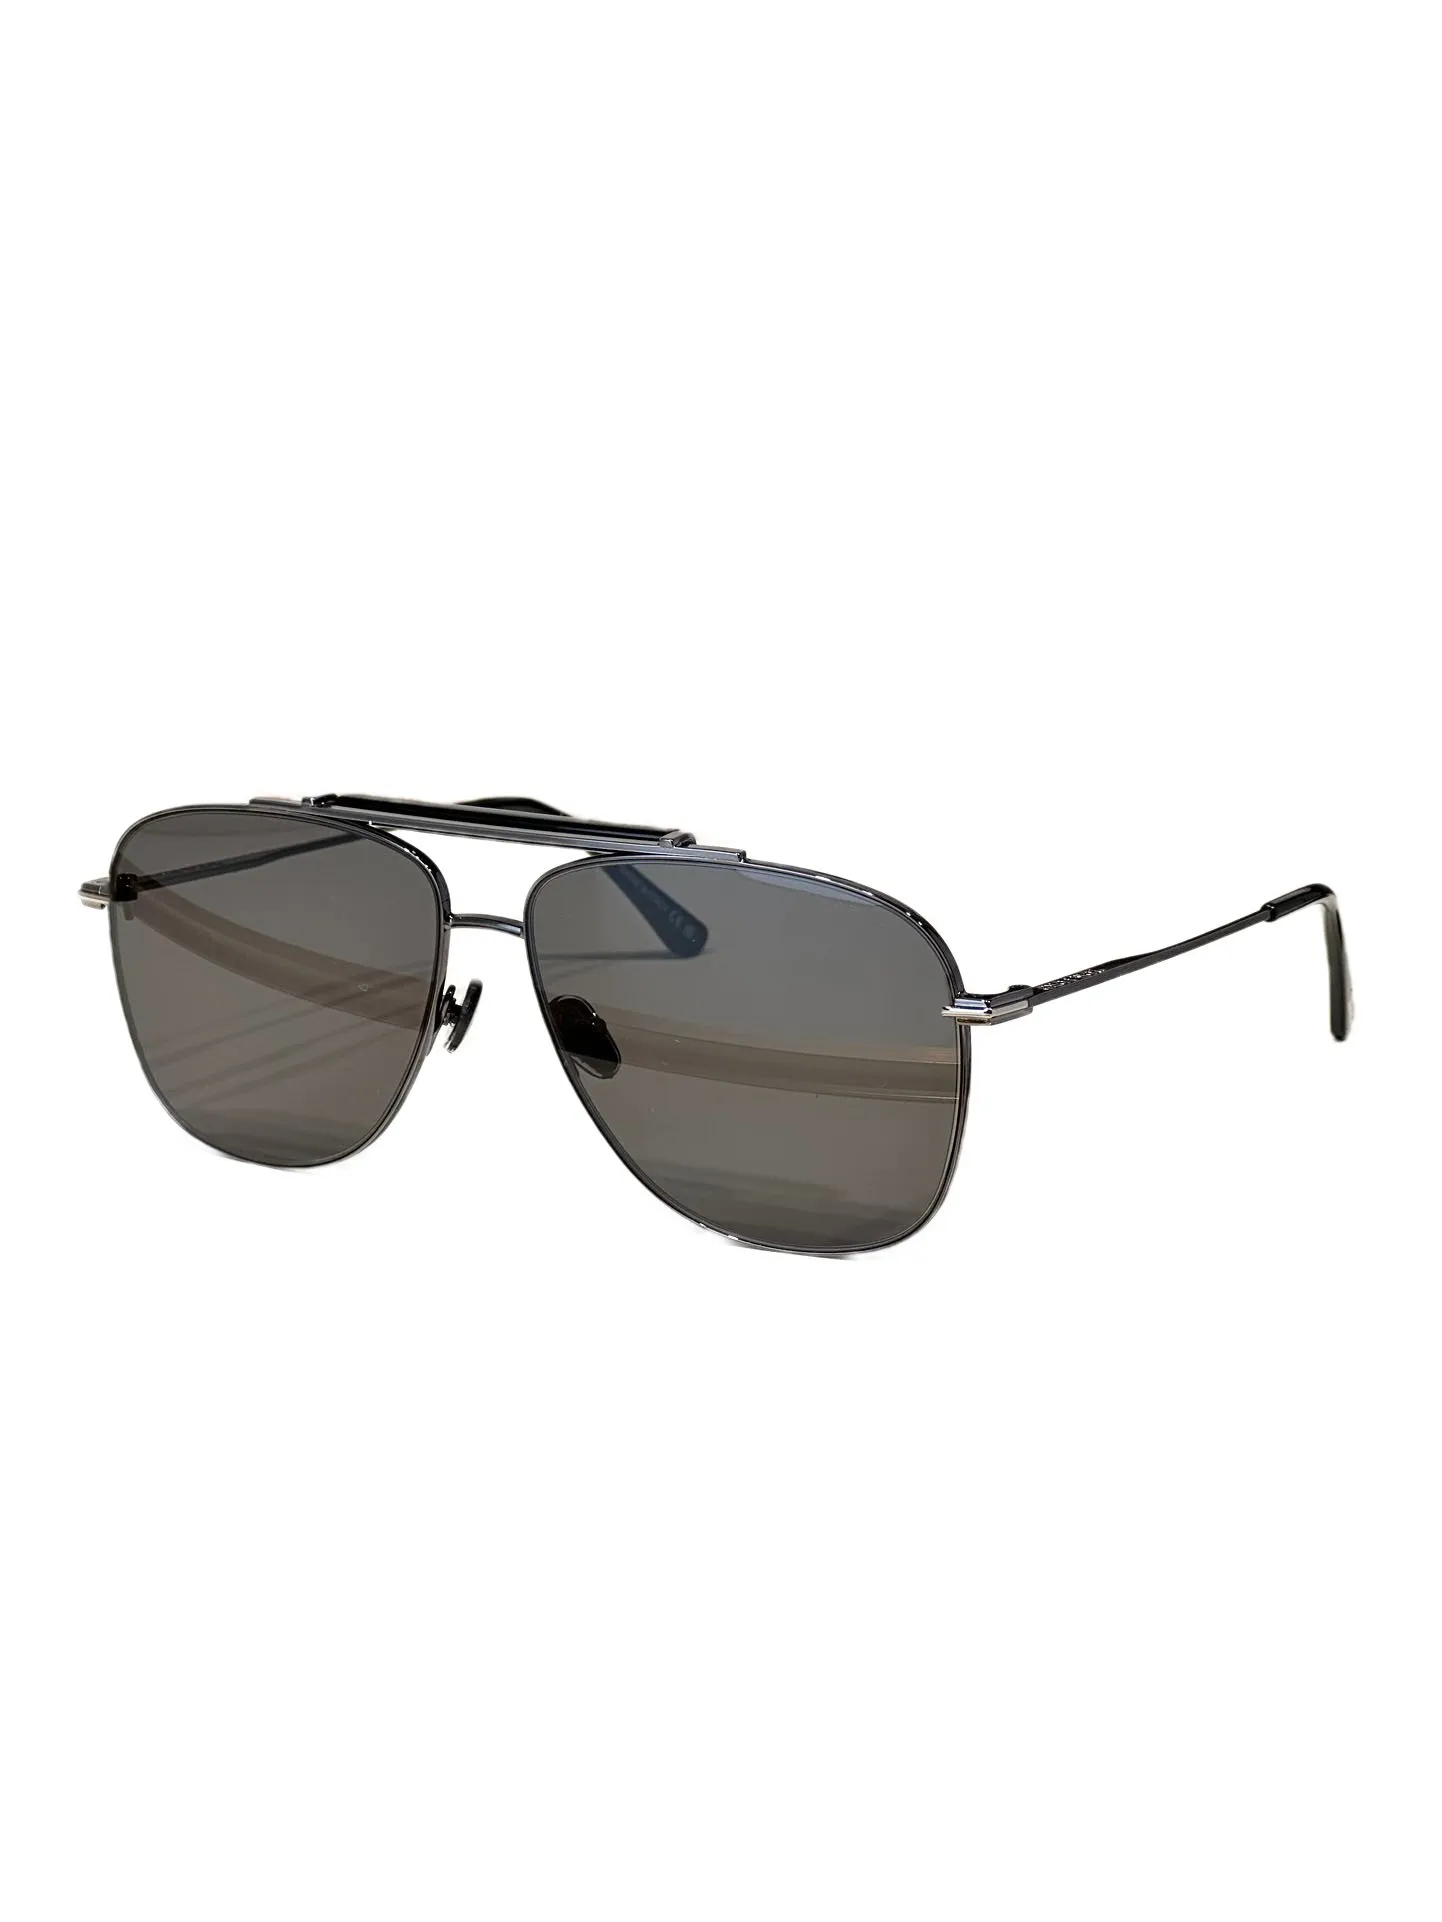 Óculos de sol feminino para homens e mulheres, óculos de sol masculino, estilo fashion, protege os olhos, lente uv400 com caixa aleatória e estojo 1017